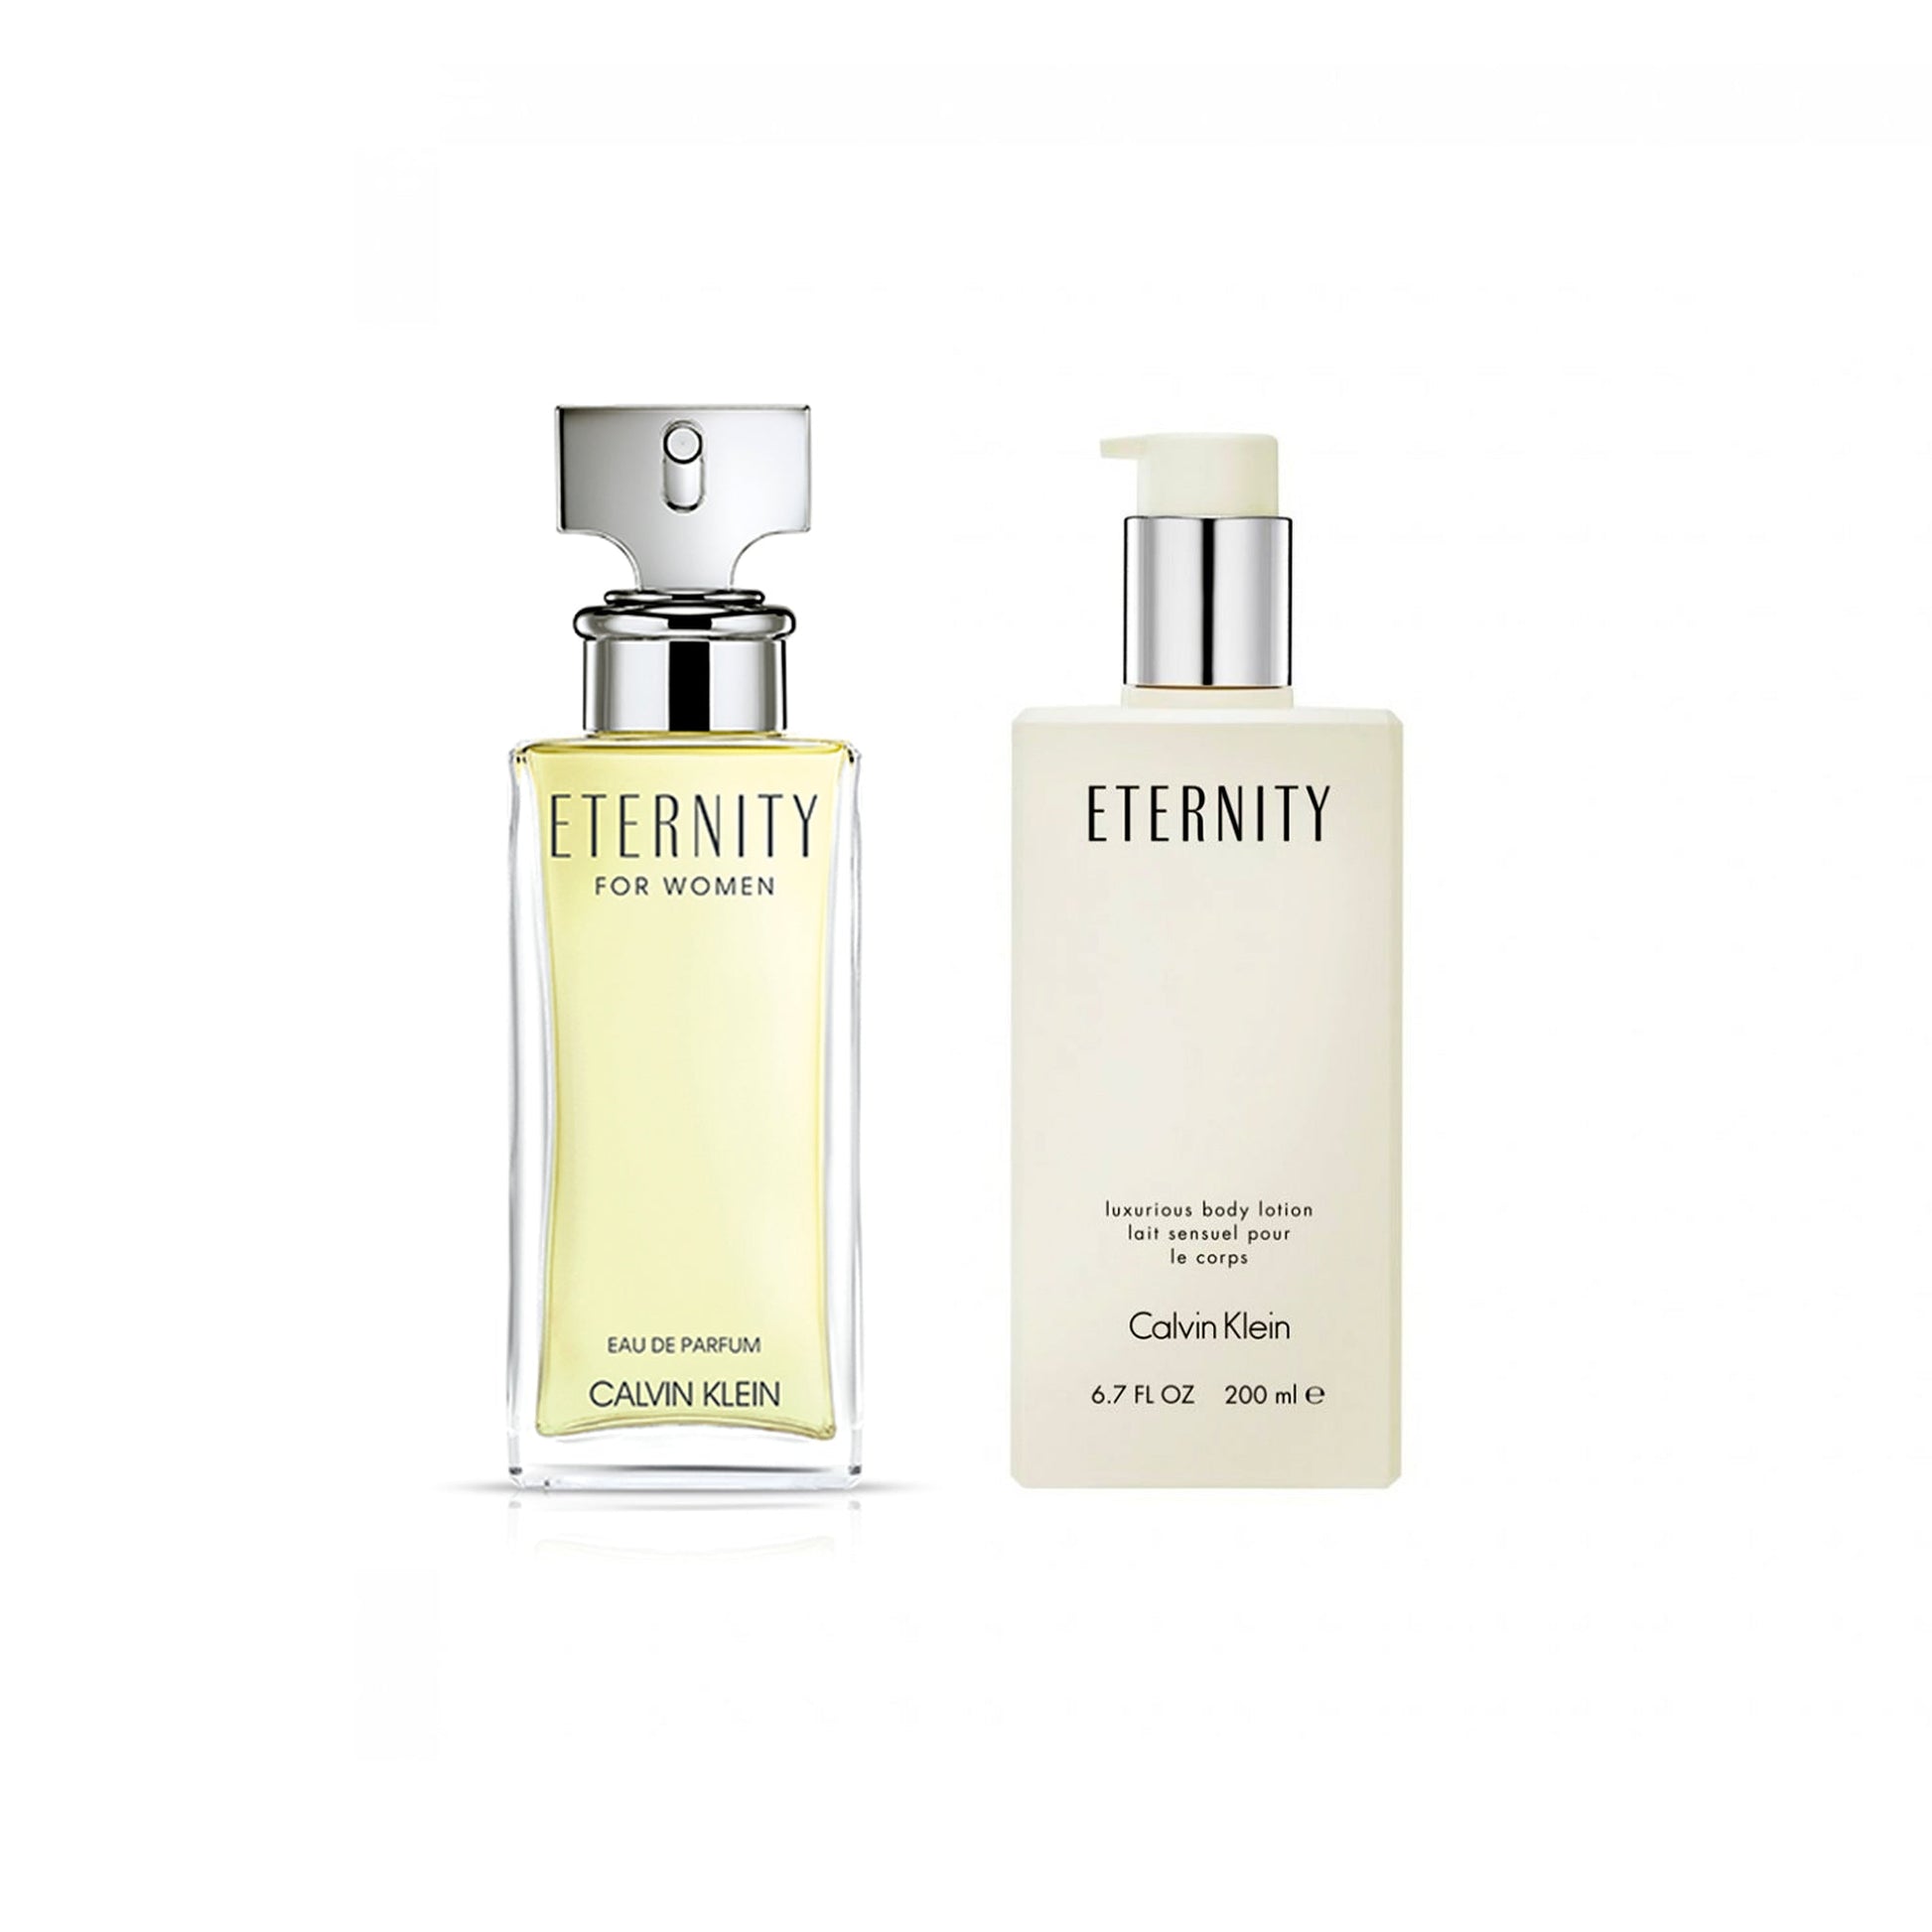 Bundle for Women: Eternity Eau de Parfum and Body Lotion by Calvin Klein, Product image 1